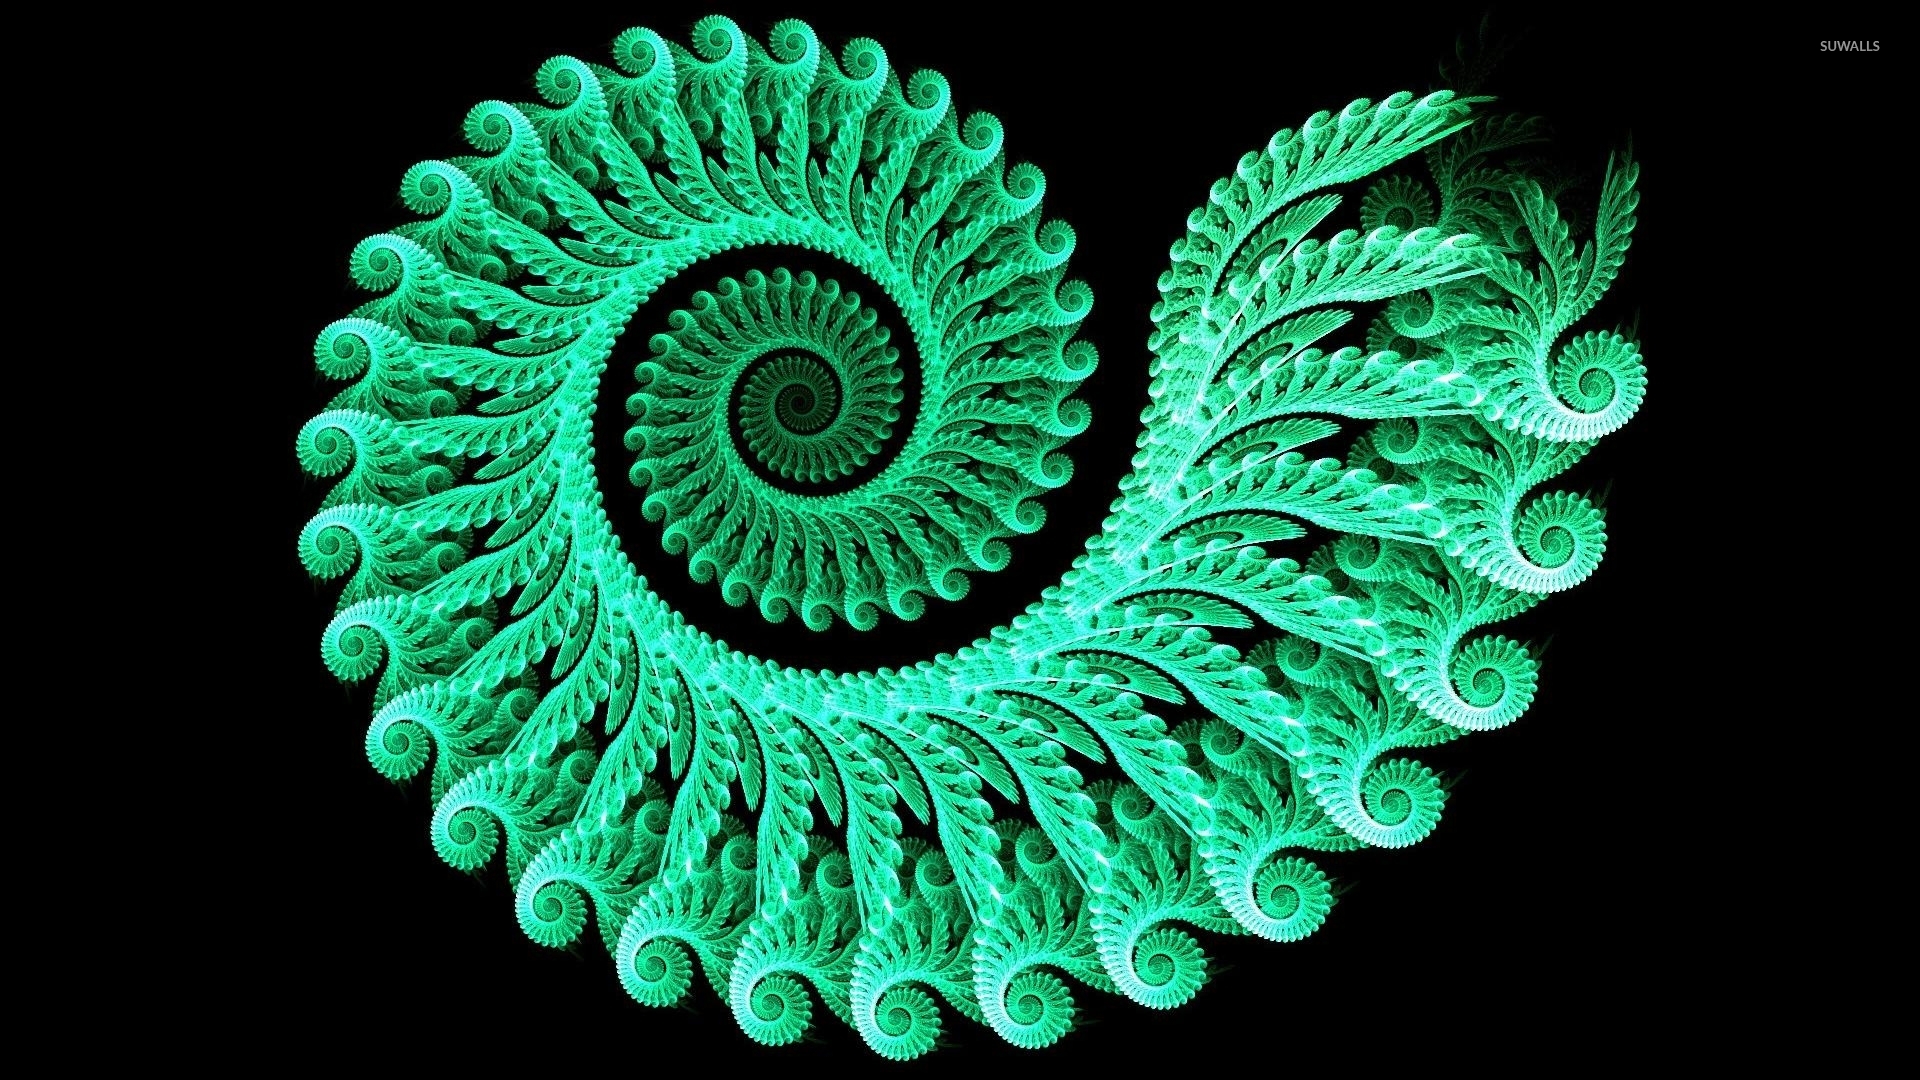 Green glowing fractal swirl wallpaper wallpaper